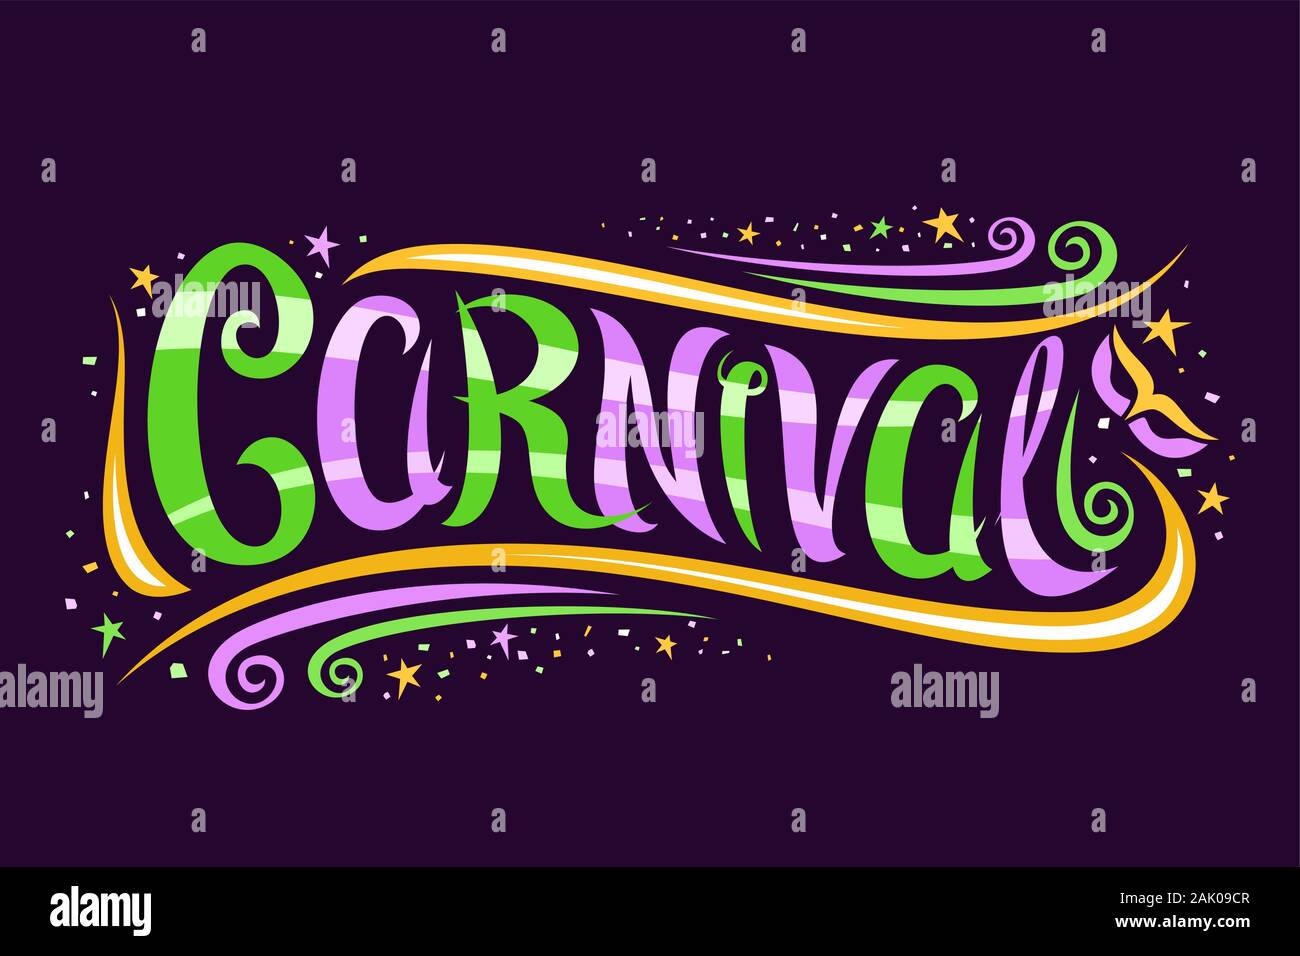 Logo vector pour le carnaval Mardi Gras, carte décorative avec curly, police calligraphique tourbillons design, étoiles jaunes et masque de carnaval, la bannière avec brosse sw Illustration de Vecteur